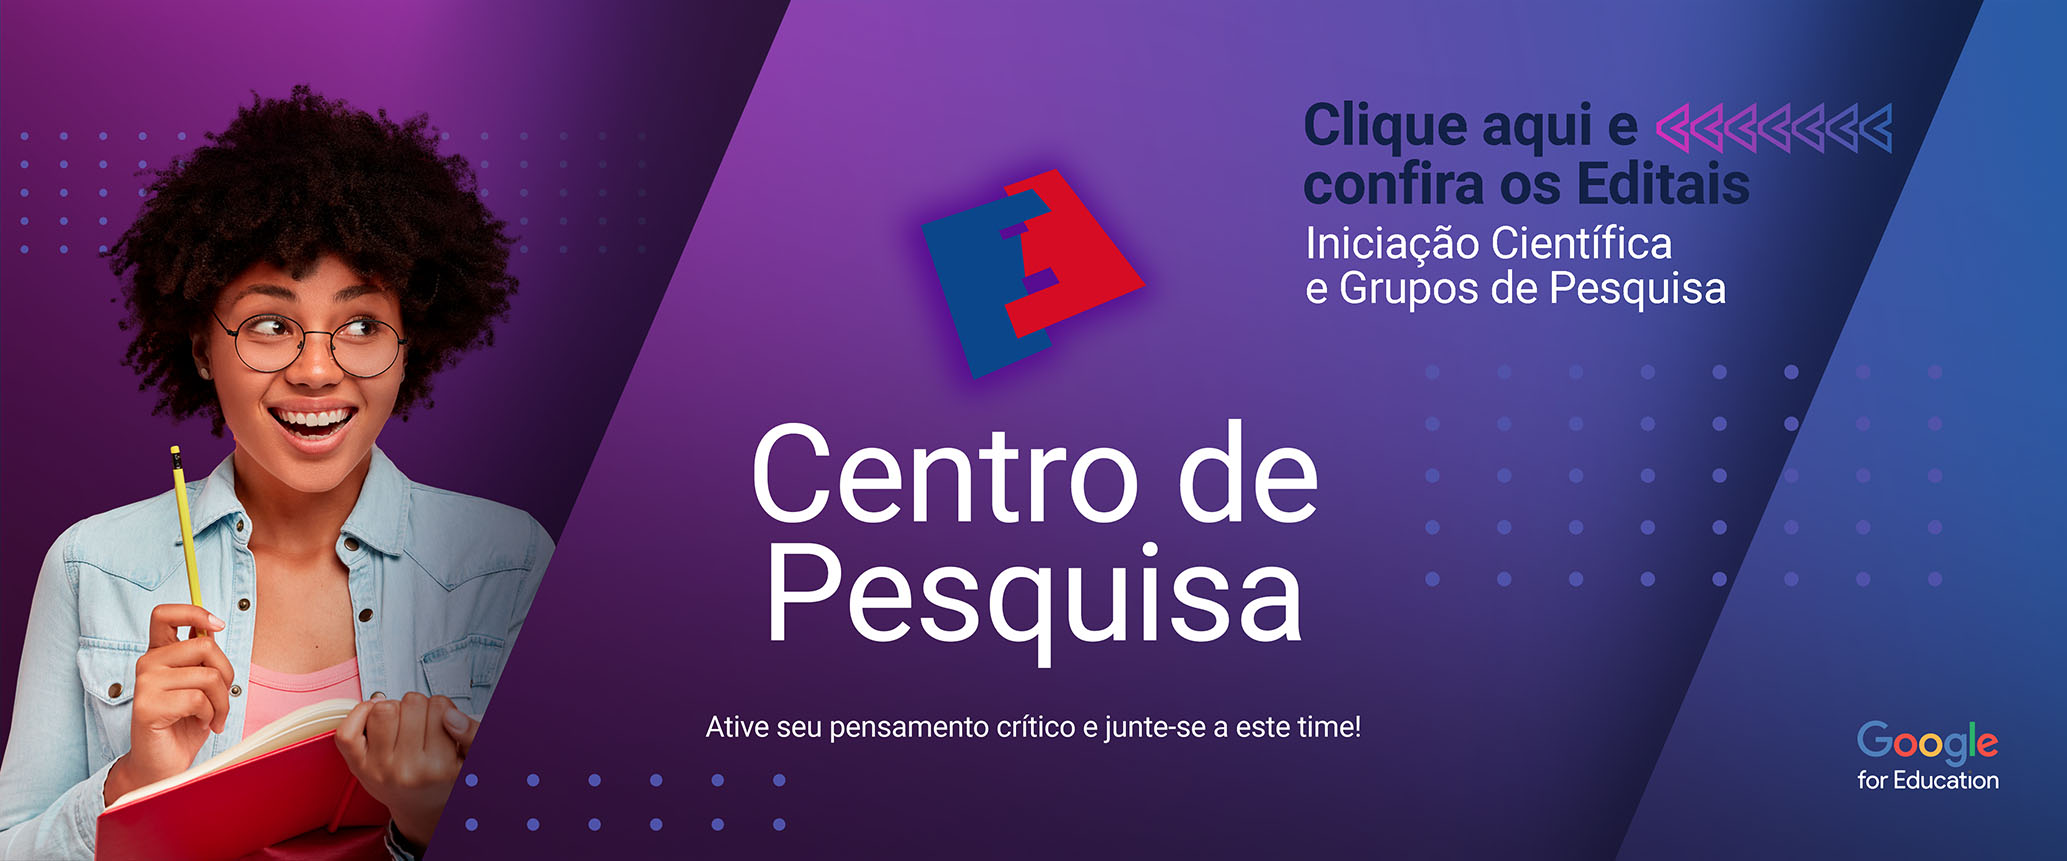 Banner site - Centro de Pesquisa